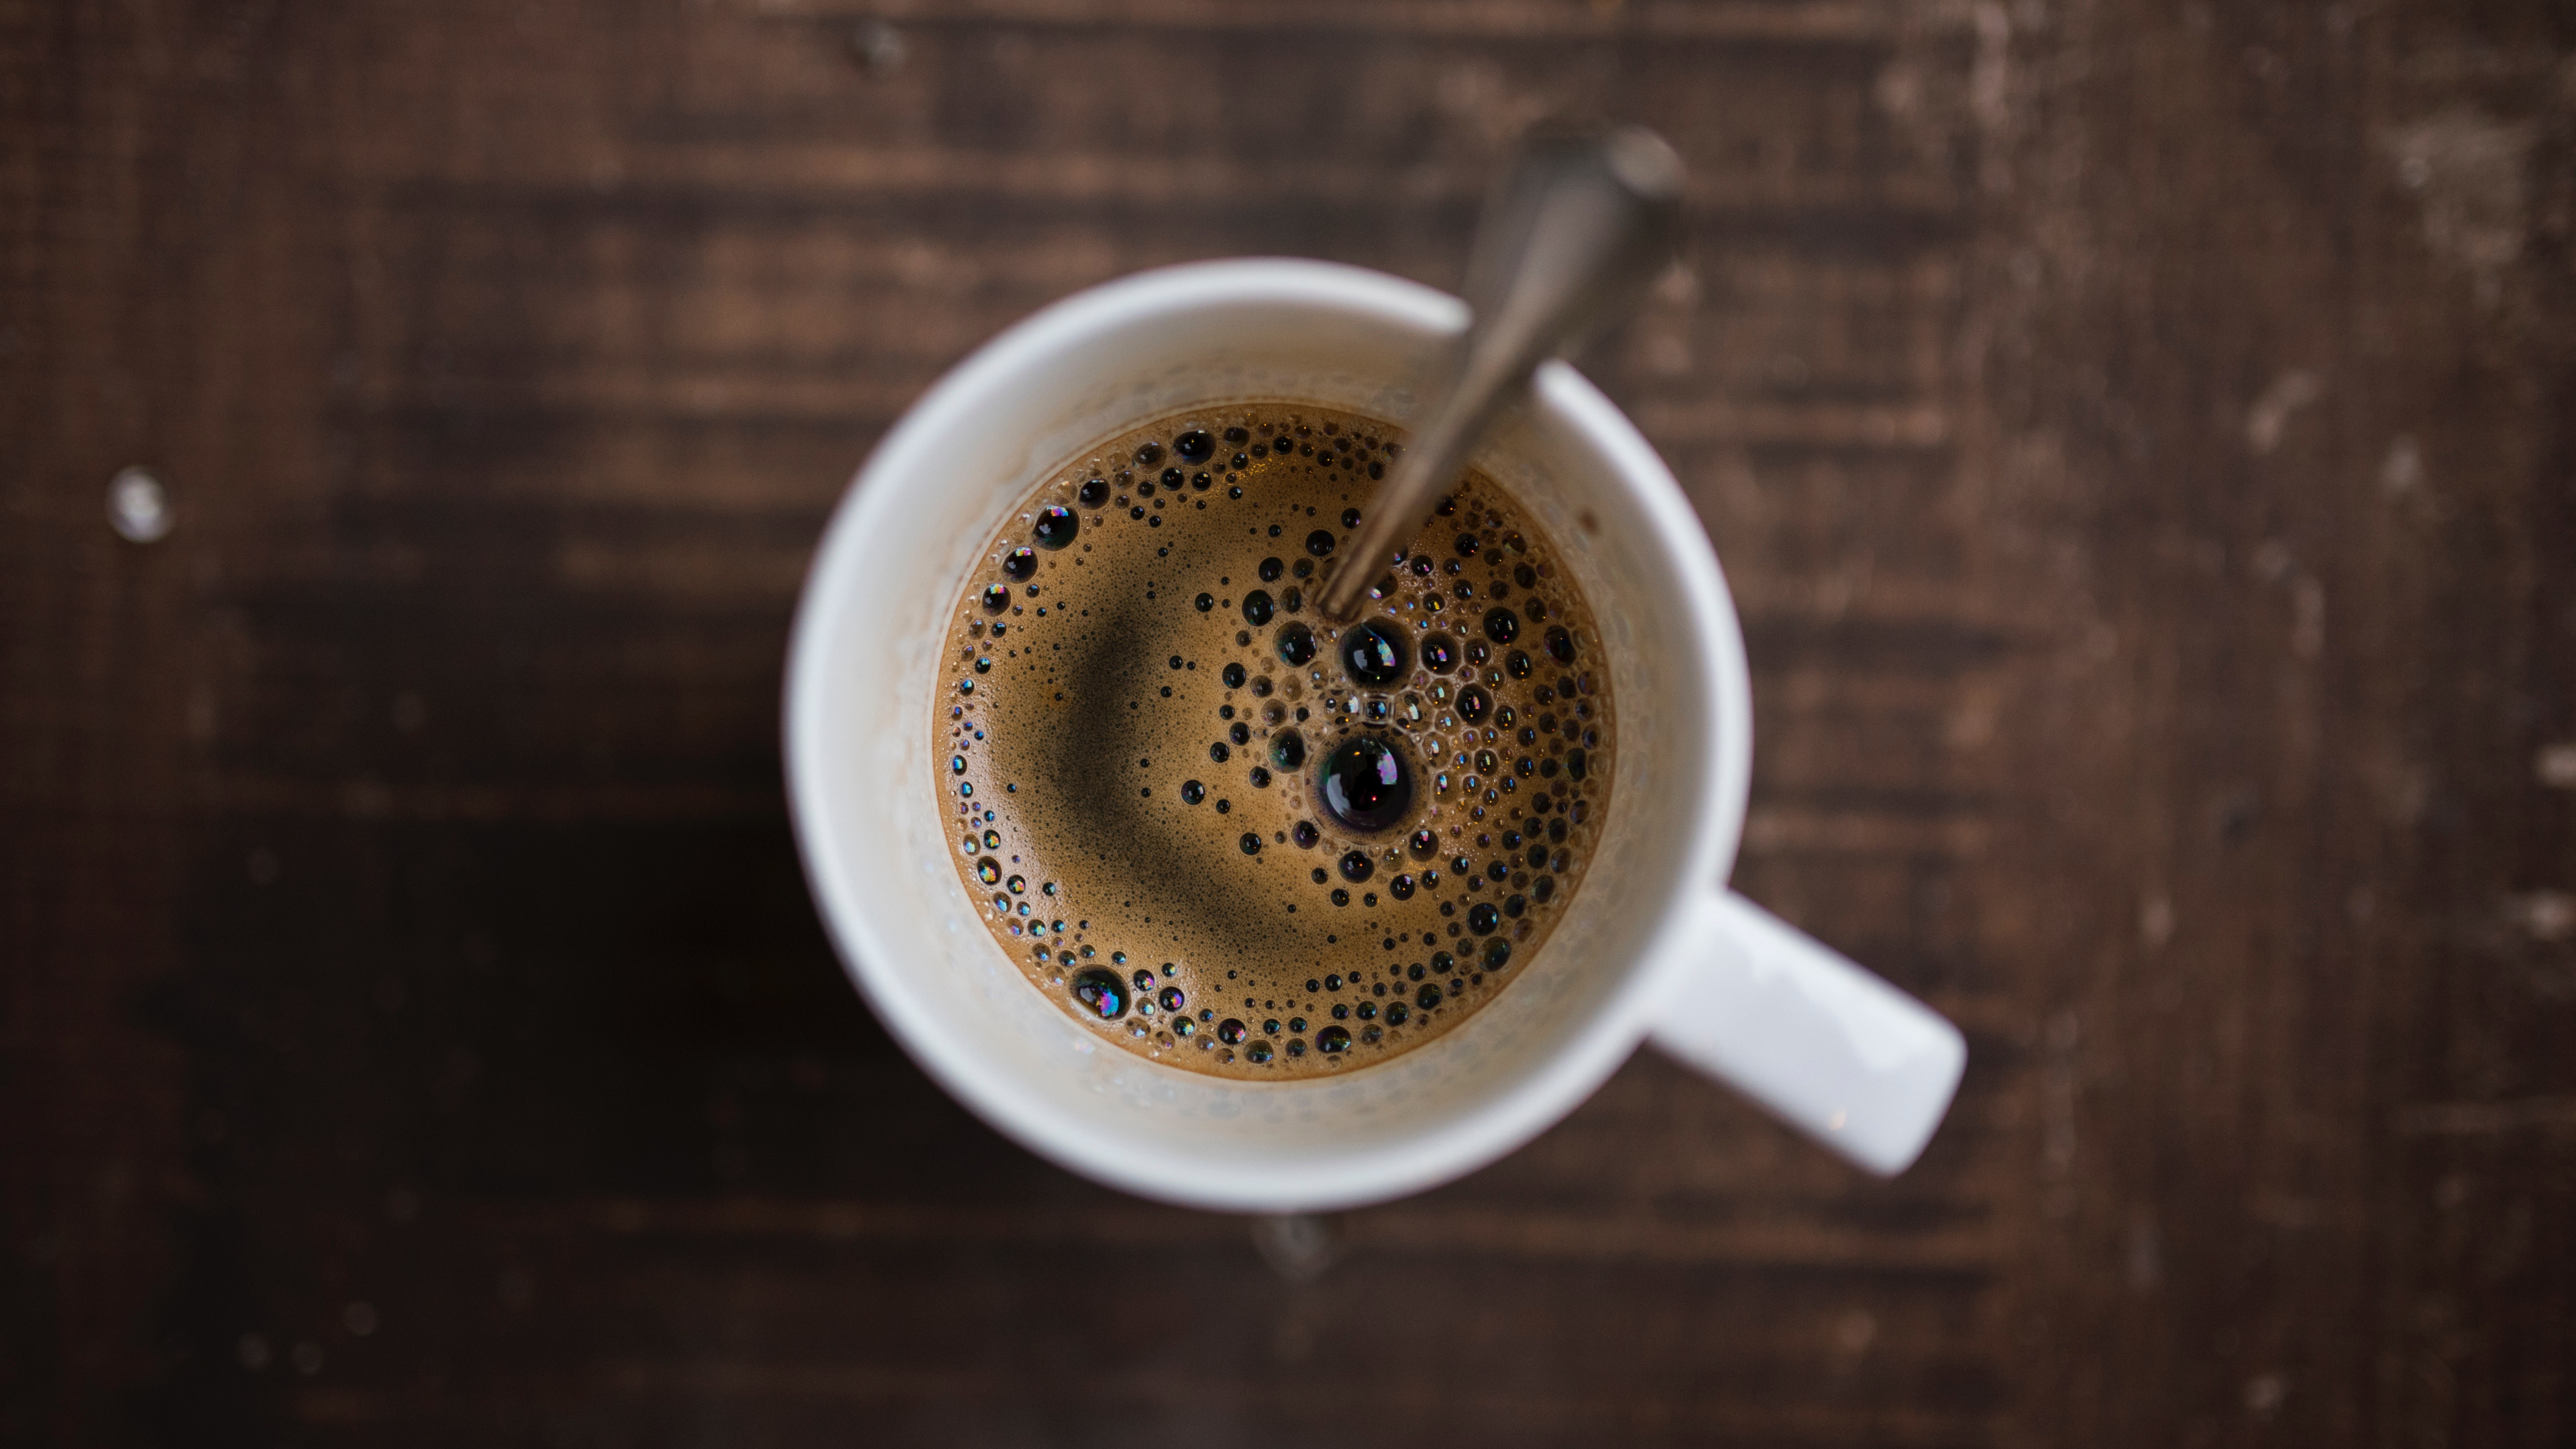 速溶咖啡, 咖啡馆, 咖啡因, 咖啡杯, 浓缩咖啡 壁纸 3840x2160 允许